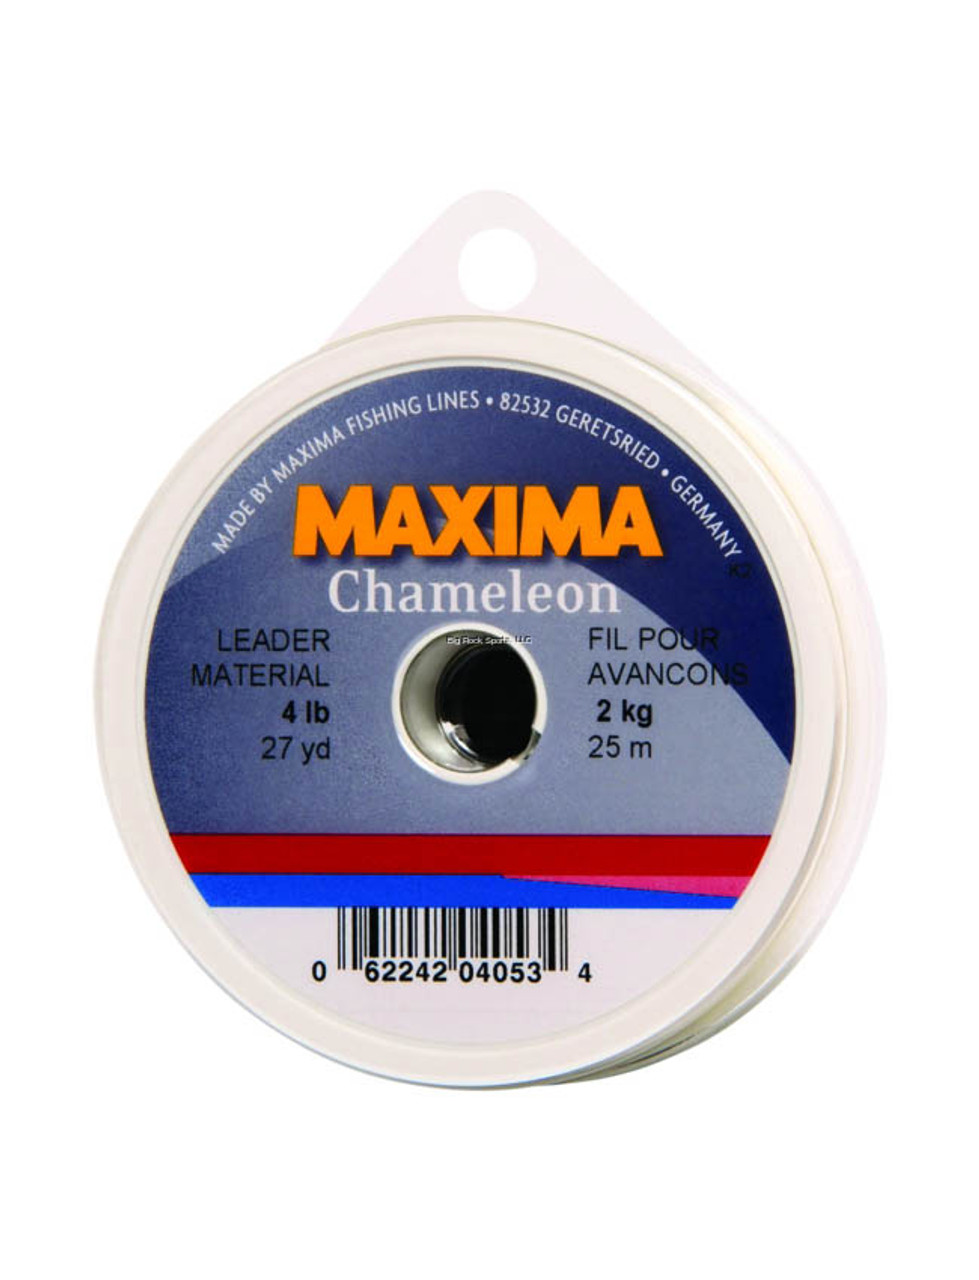 Maxima Chameleon Fishing Line - Leader Wheel - The Harbour Chandler